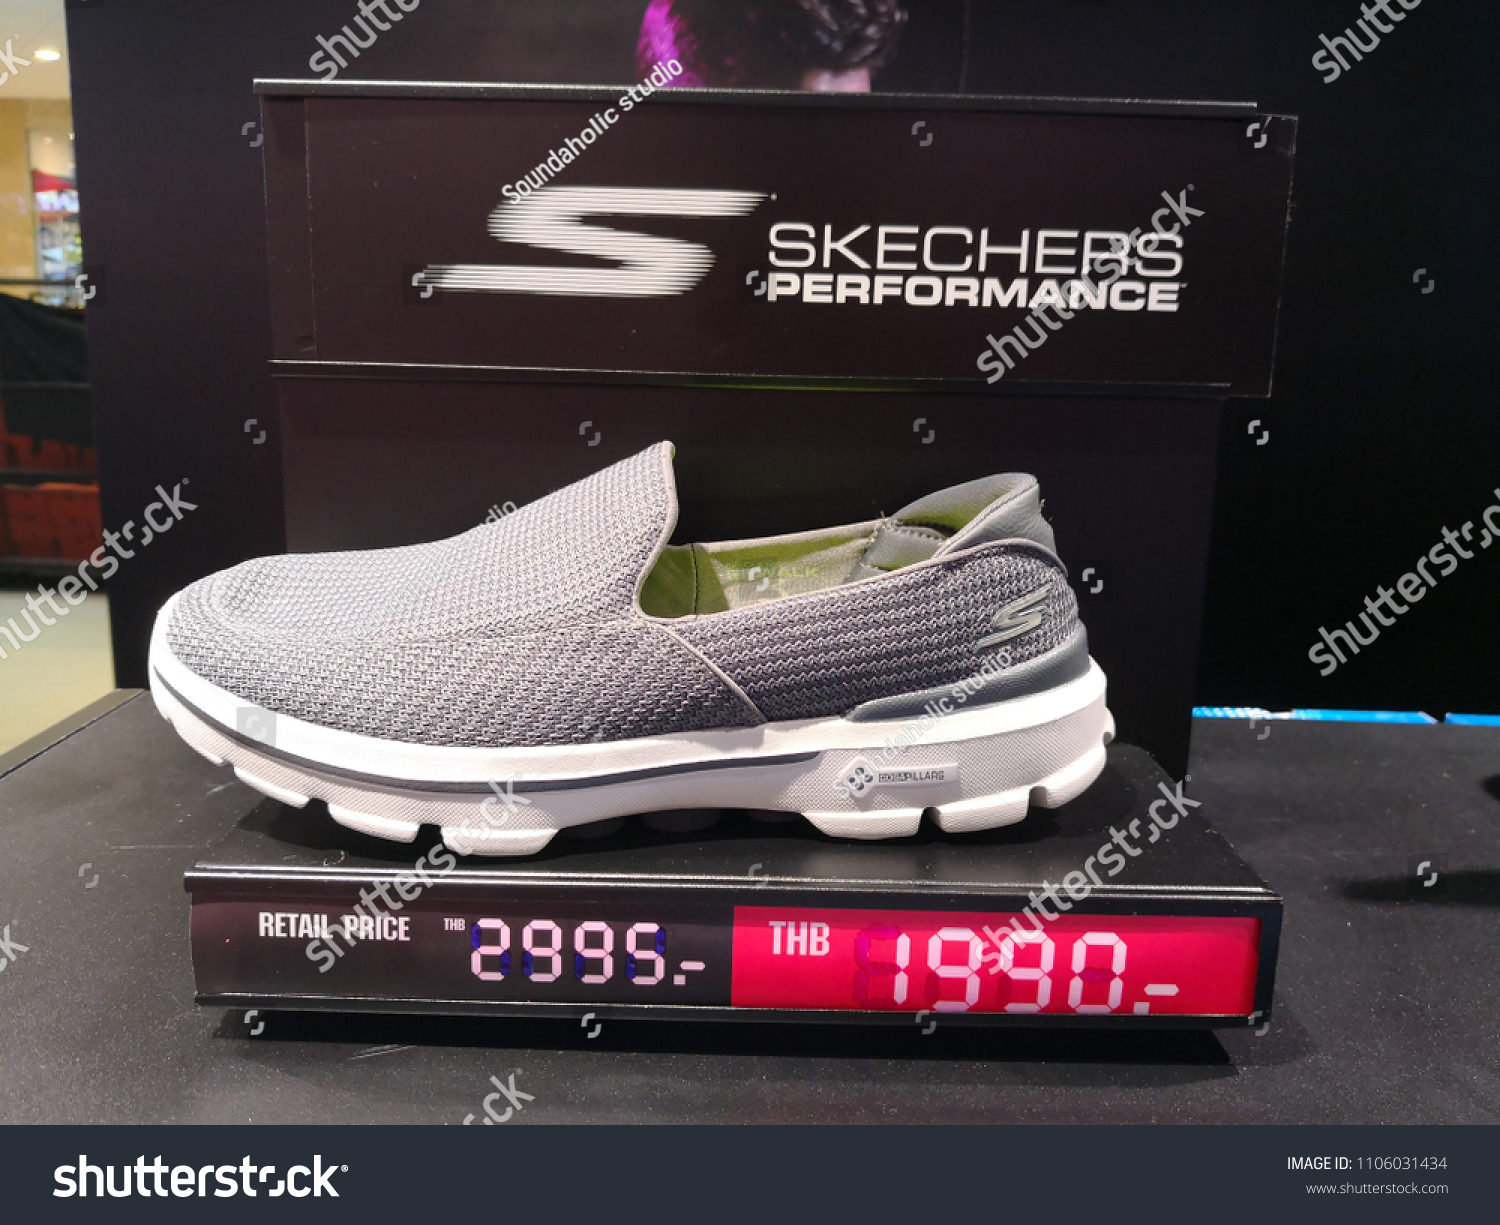 skechers shoes bangkok